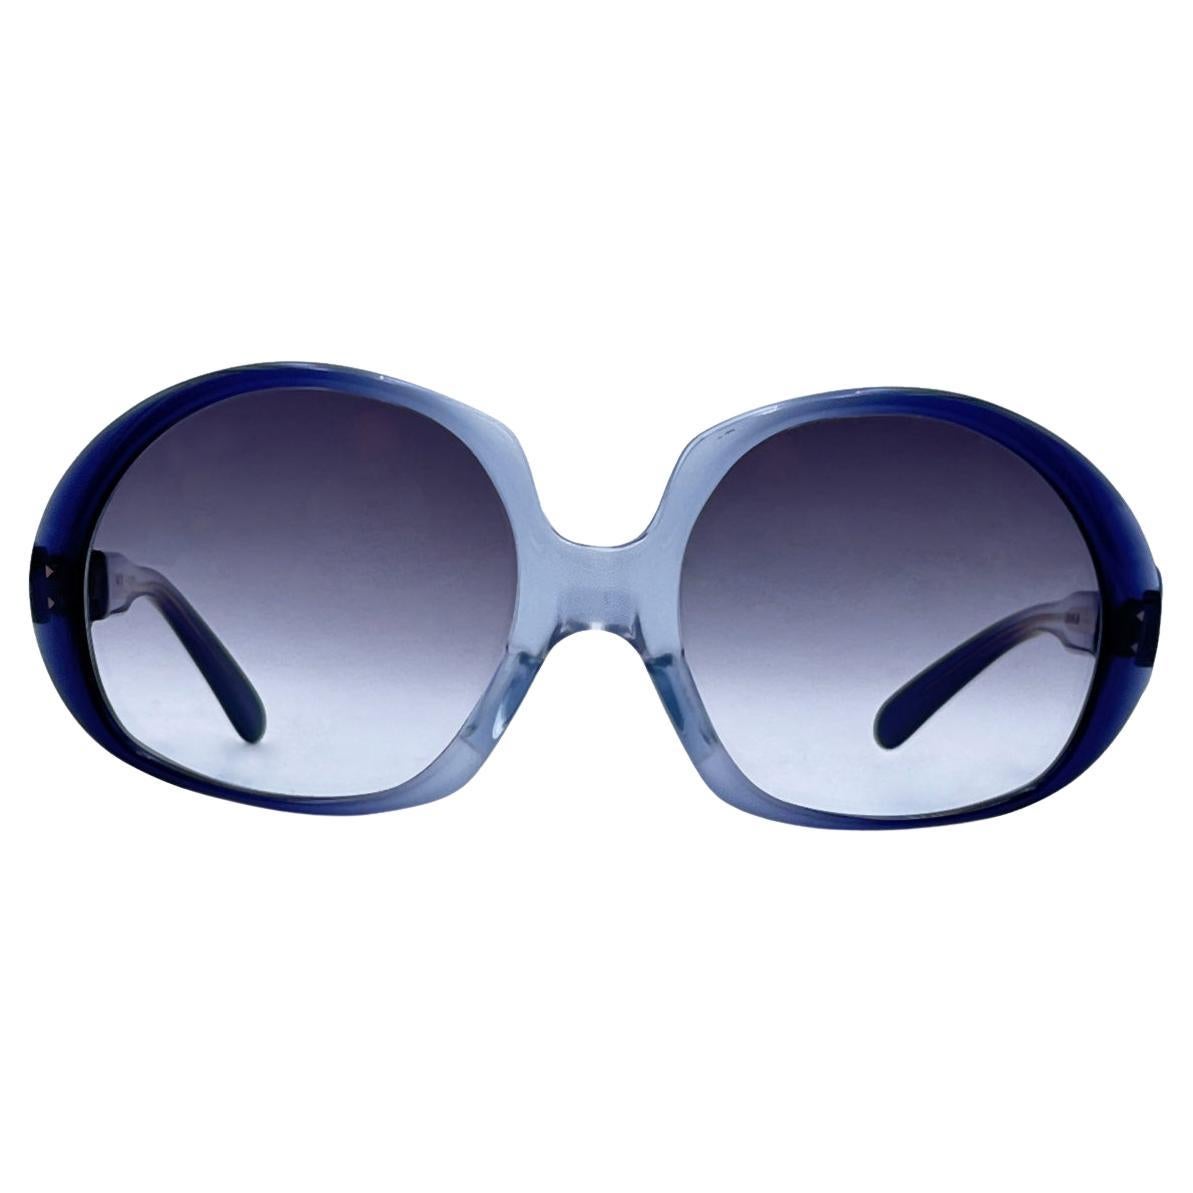 Diana Vintage Clear Acetate Oversized Sunglasses Mod. Cordelia